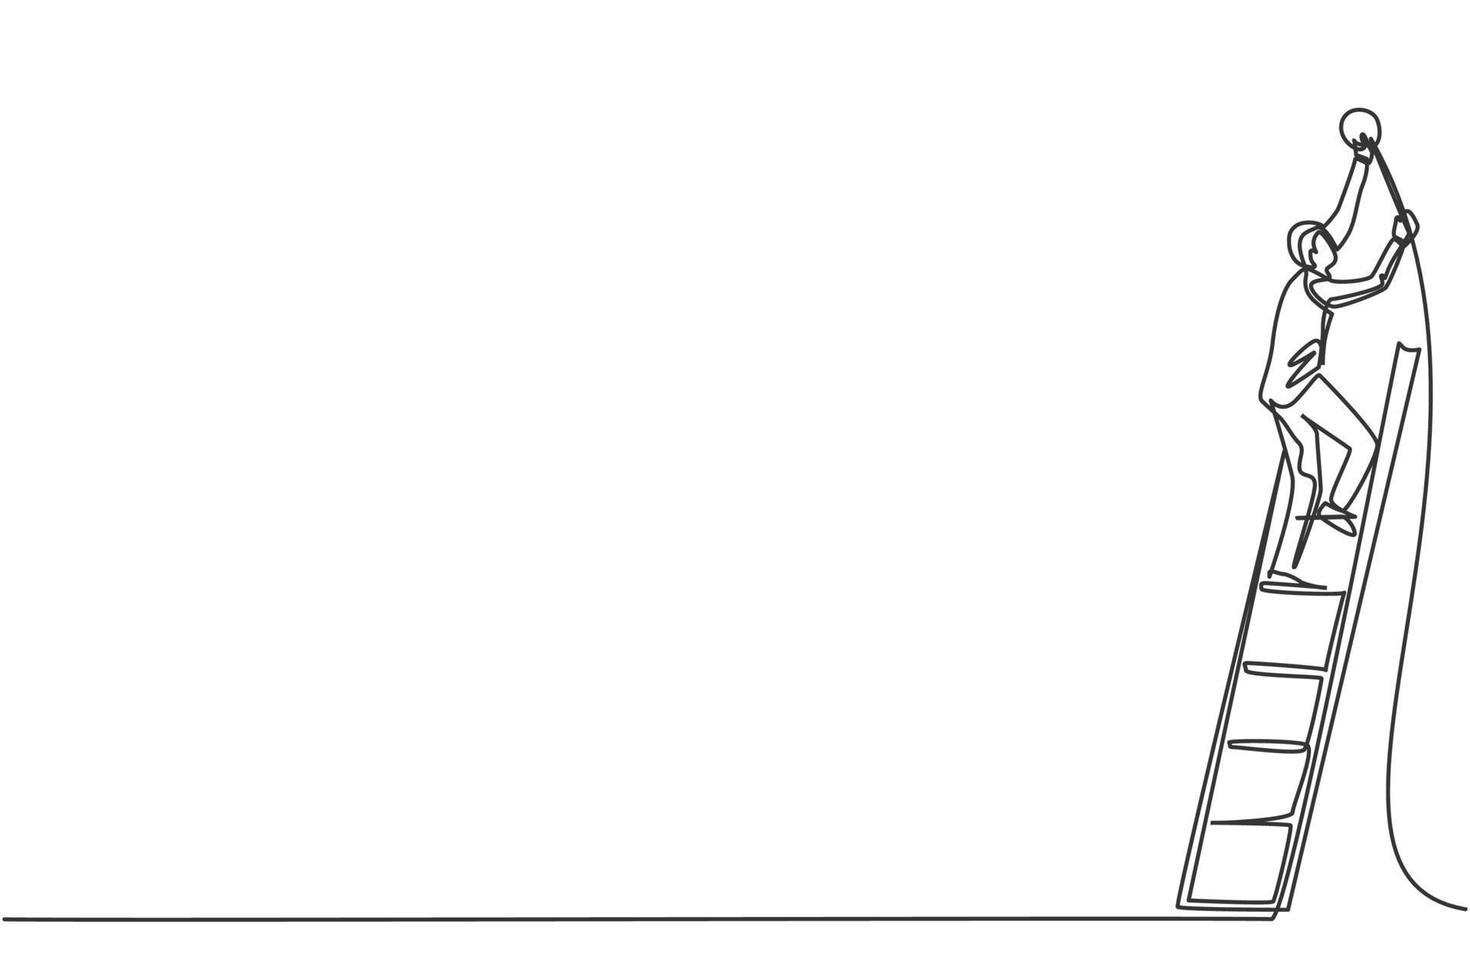 Un solo dibujo de una línea de un joven manitas inteligente arregla la lámpara de carretera con una escalera. concepto mínimo de crecimiento del mercado financiero empresarial. Ilustración de vector gráfico de diseño de dibujo de línea continua moderna